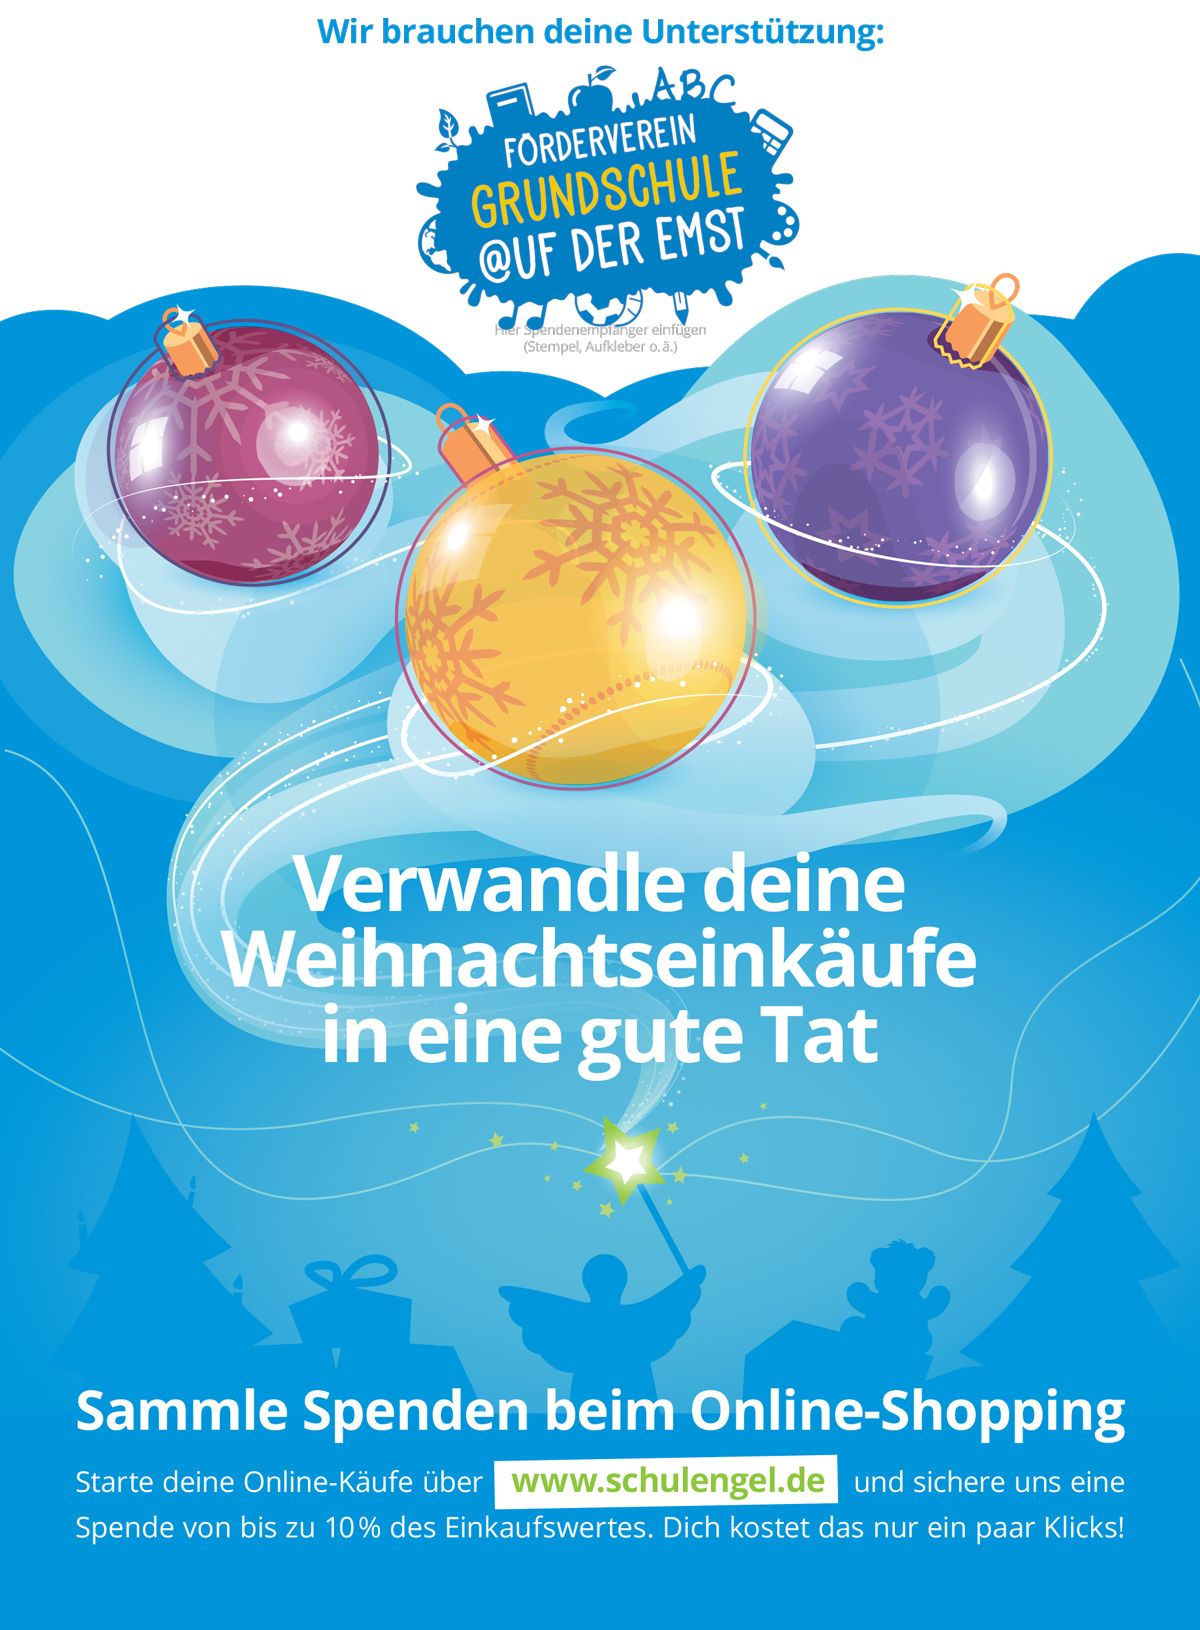 Schulengel Weihnachtsflyer mit Logo 2019 11 01